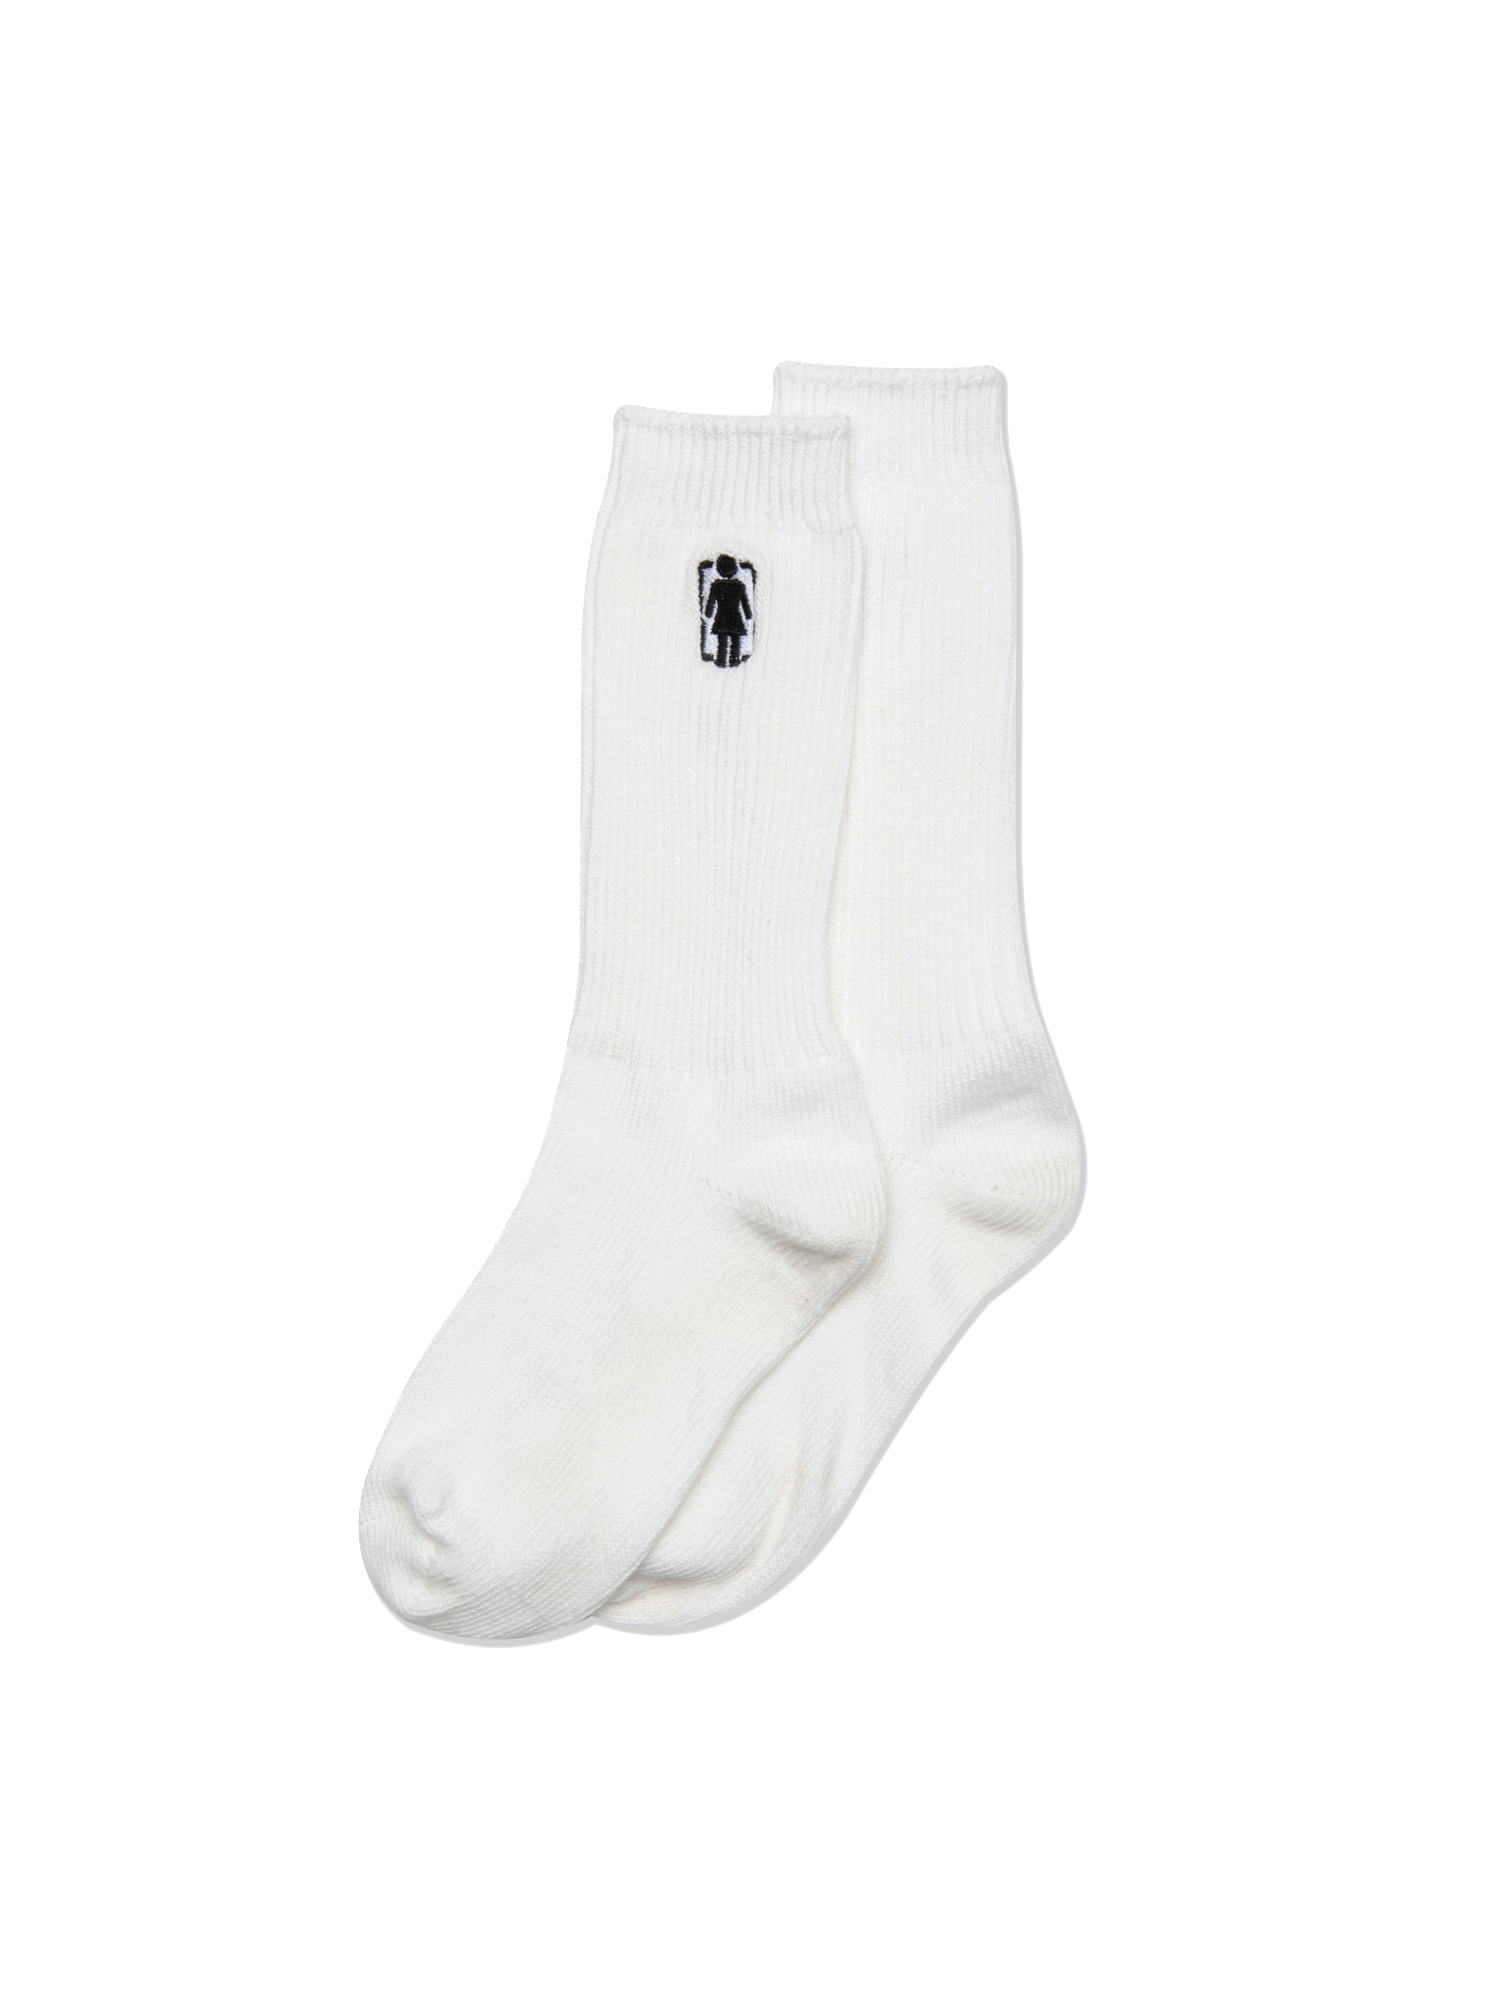 Unboxed Og Logo Socks - White